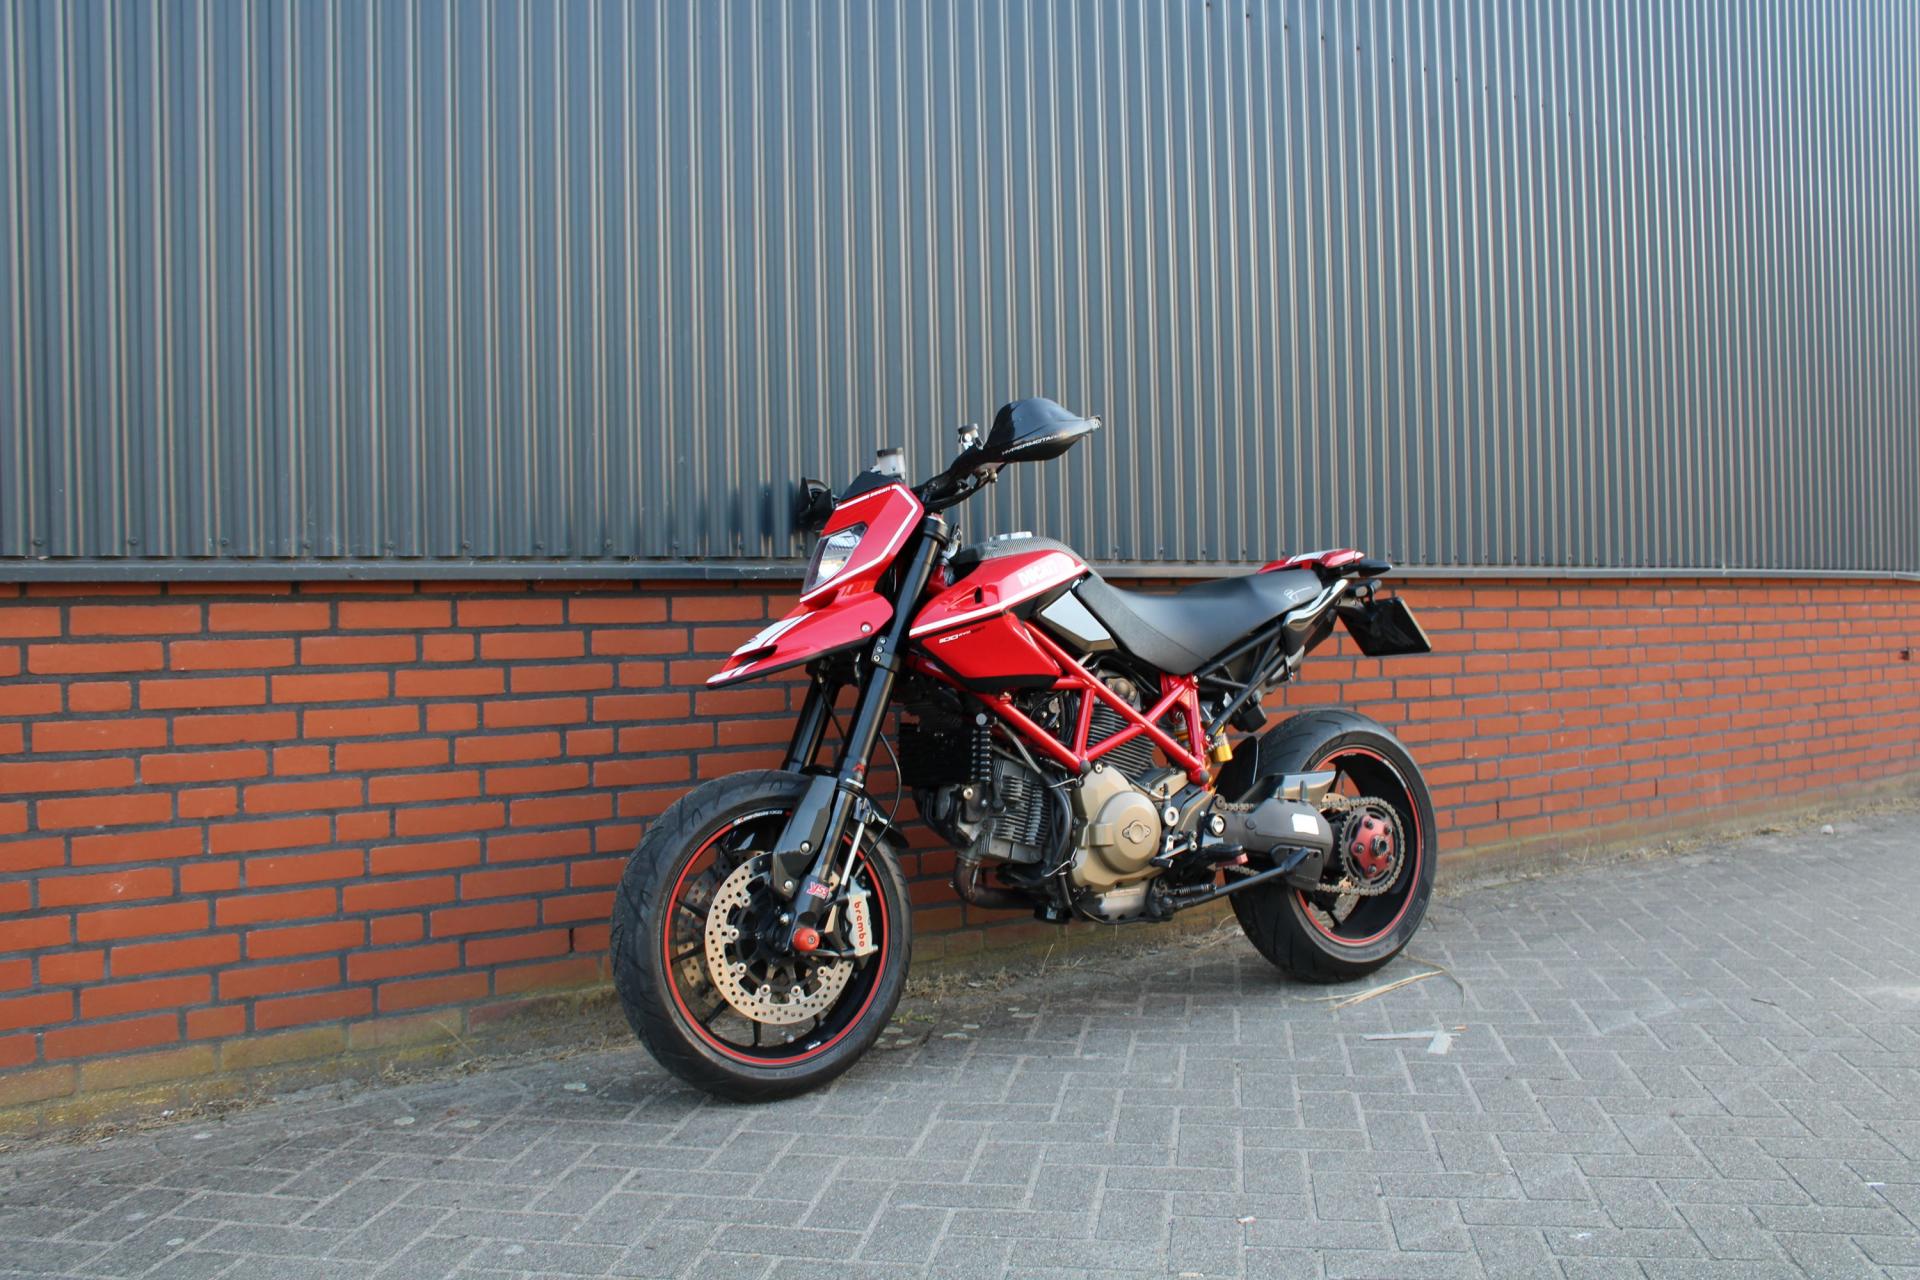 Ducati Hypermotard 1100 evo sp (01.JPG)